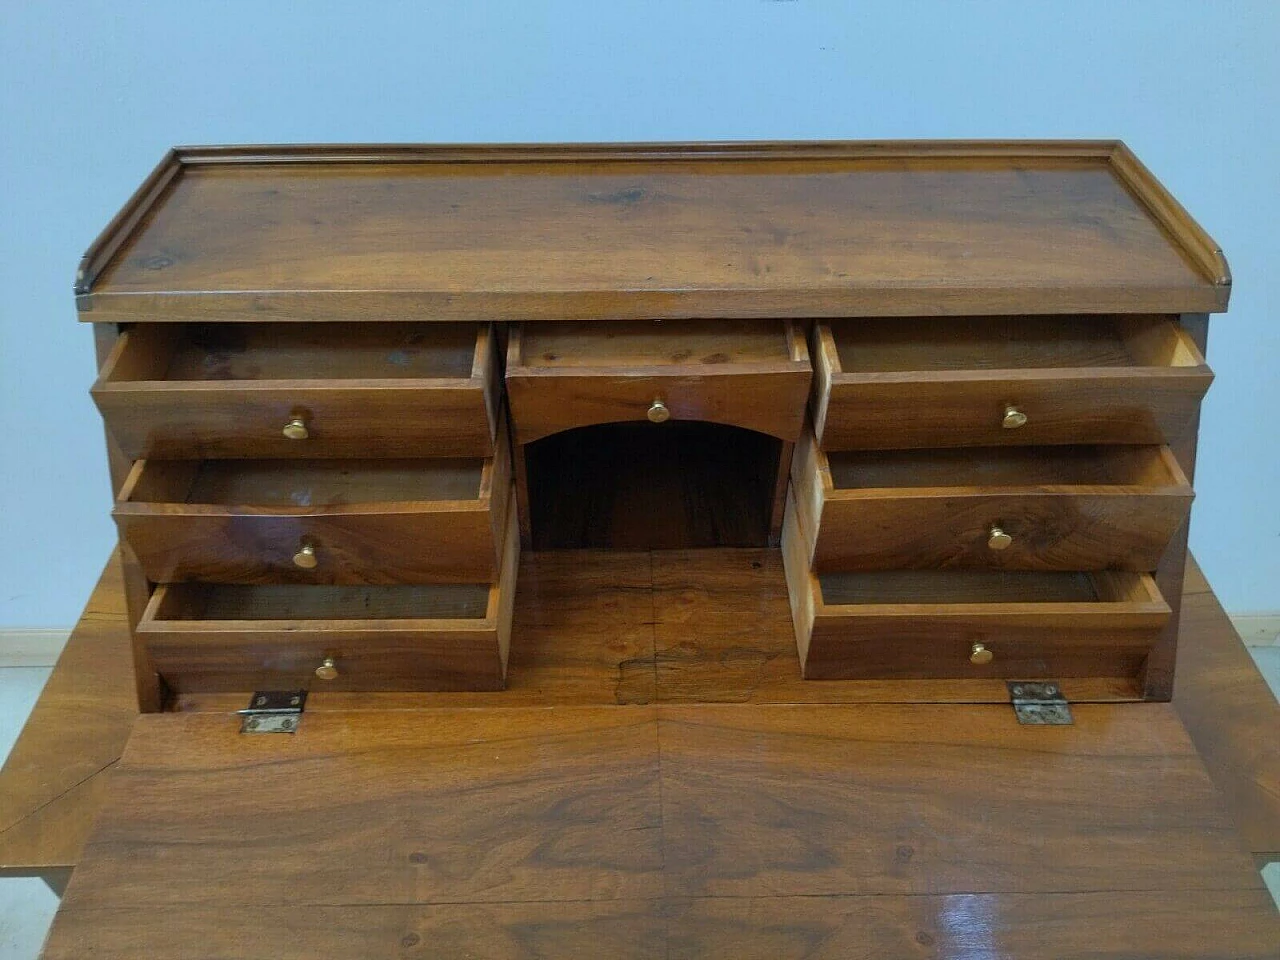 Direttorio flap desk in walnut and bronze, 18th century 1477228